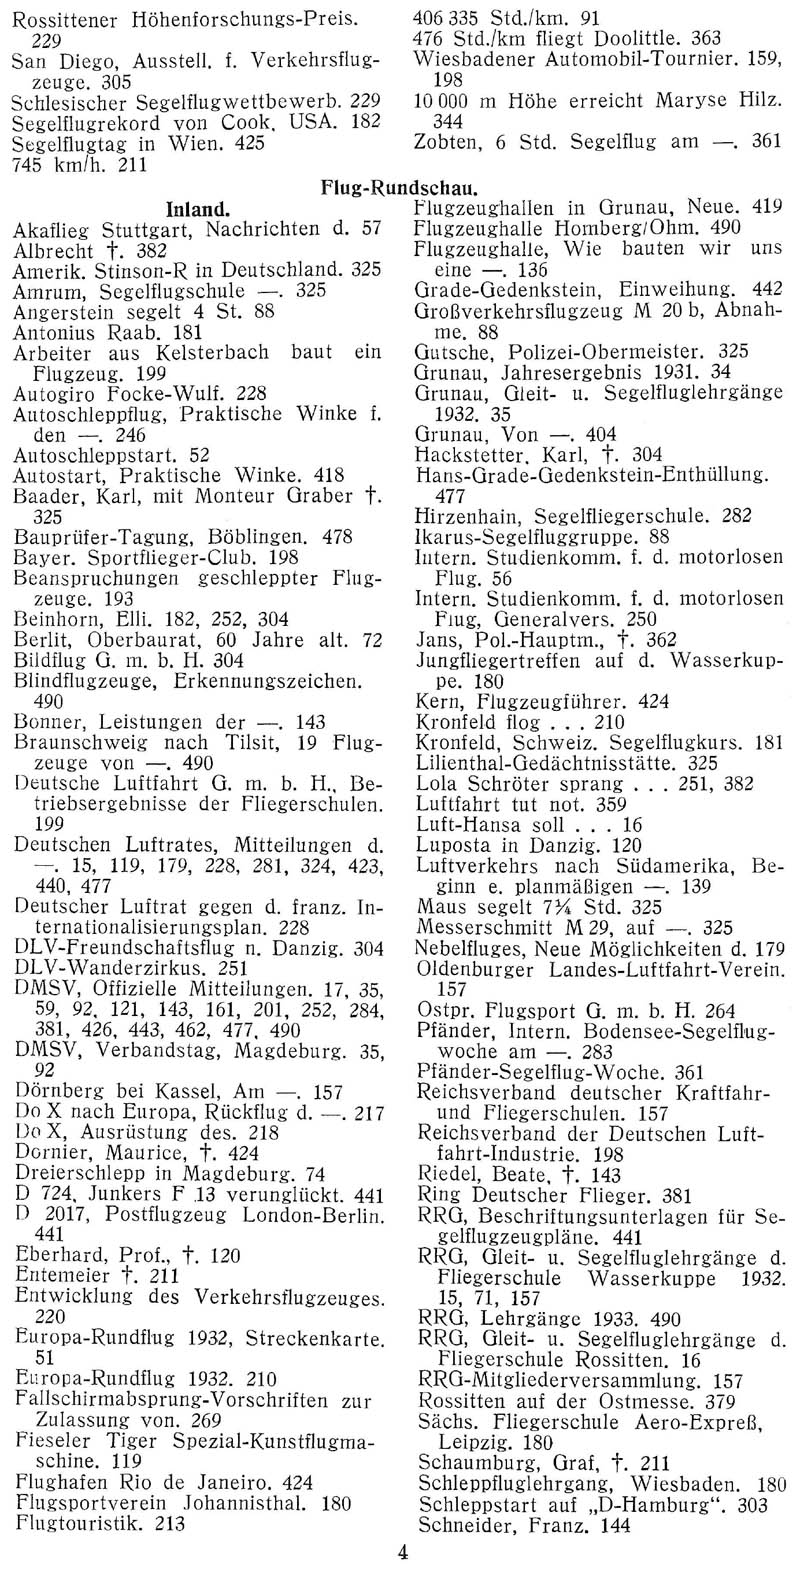 Sachregister und Inhaltsverzeichnis der Zeitschrift Flugsport für das Jahr 1932